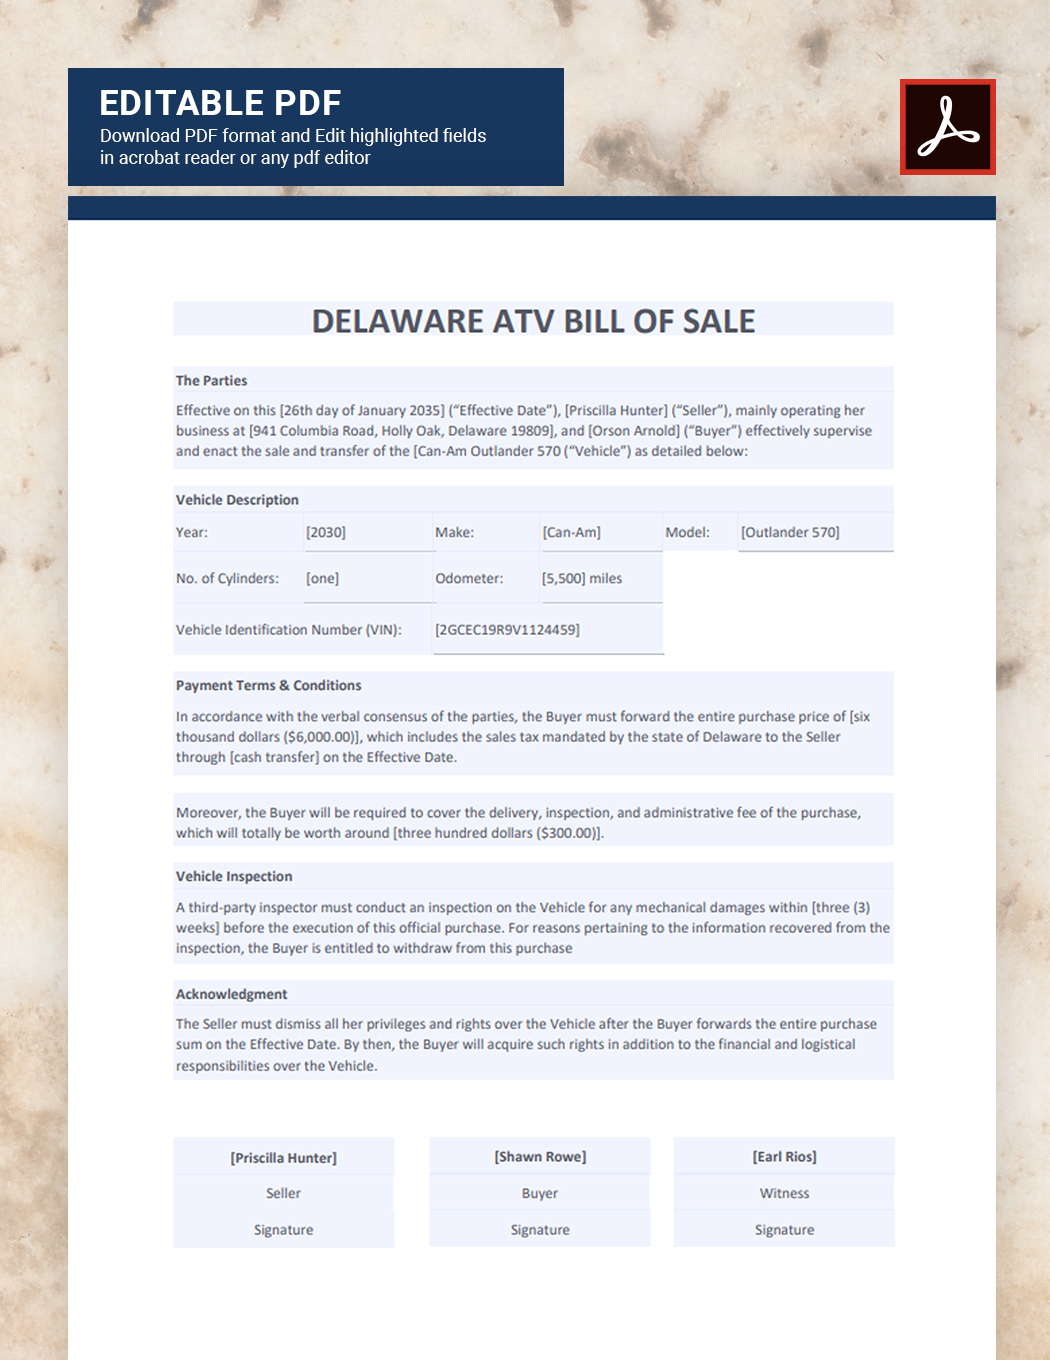 Delaware ATV Bill of Sale Template